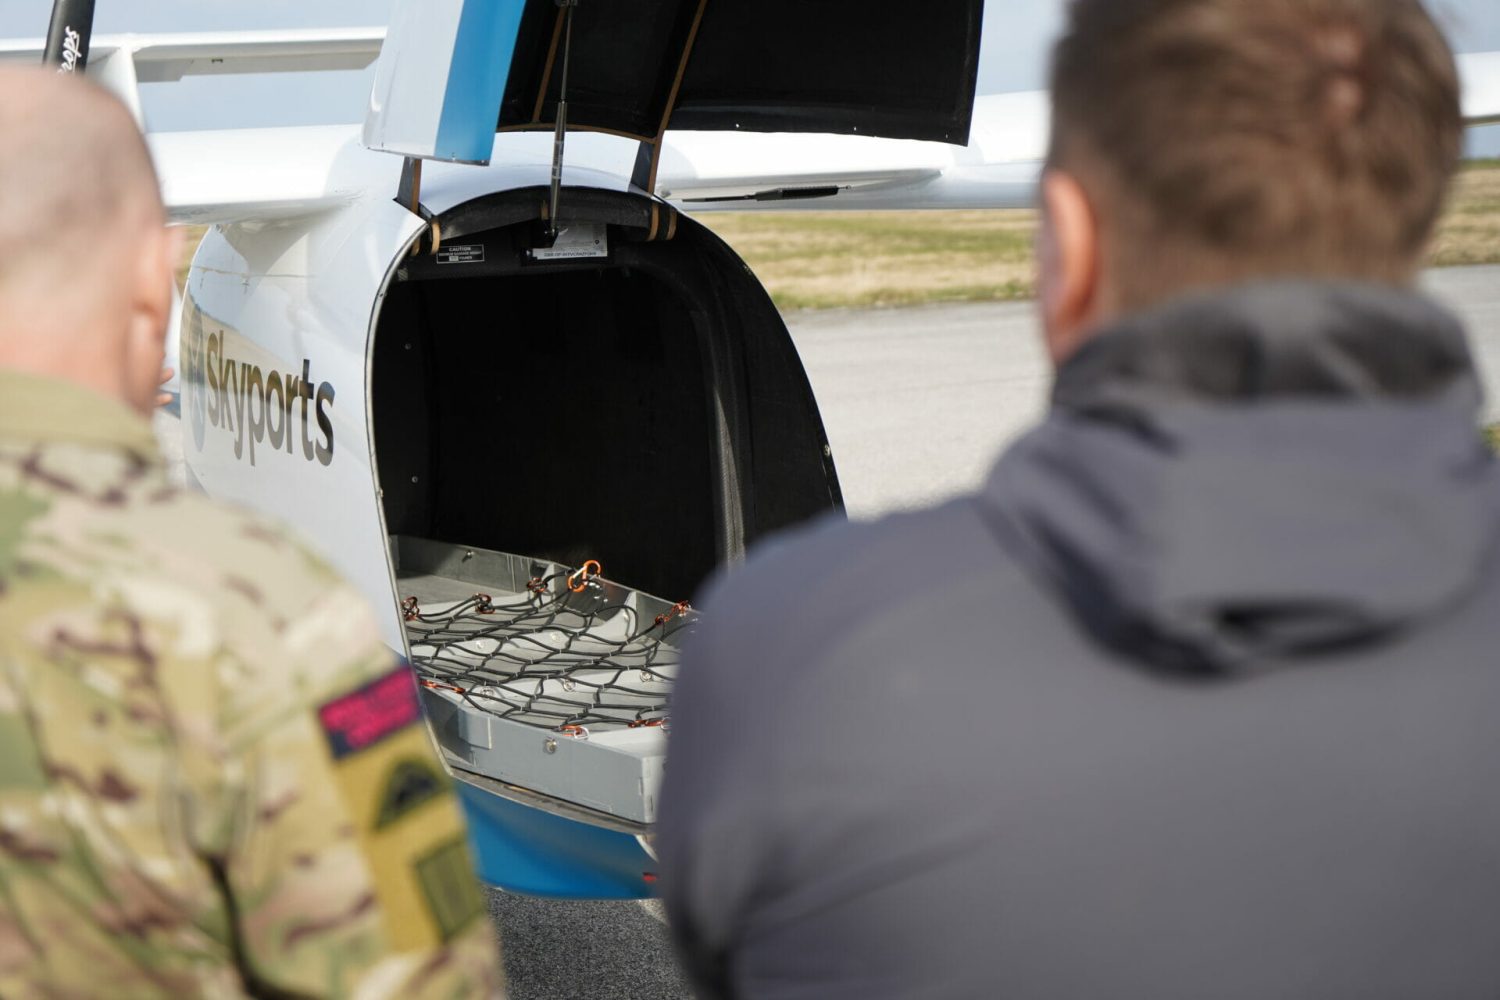 Skyports UK heavy-lift drone